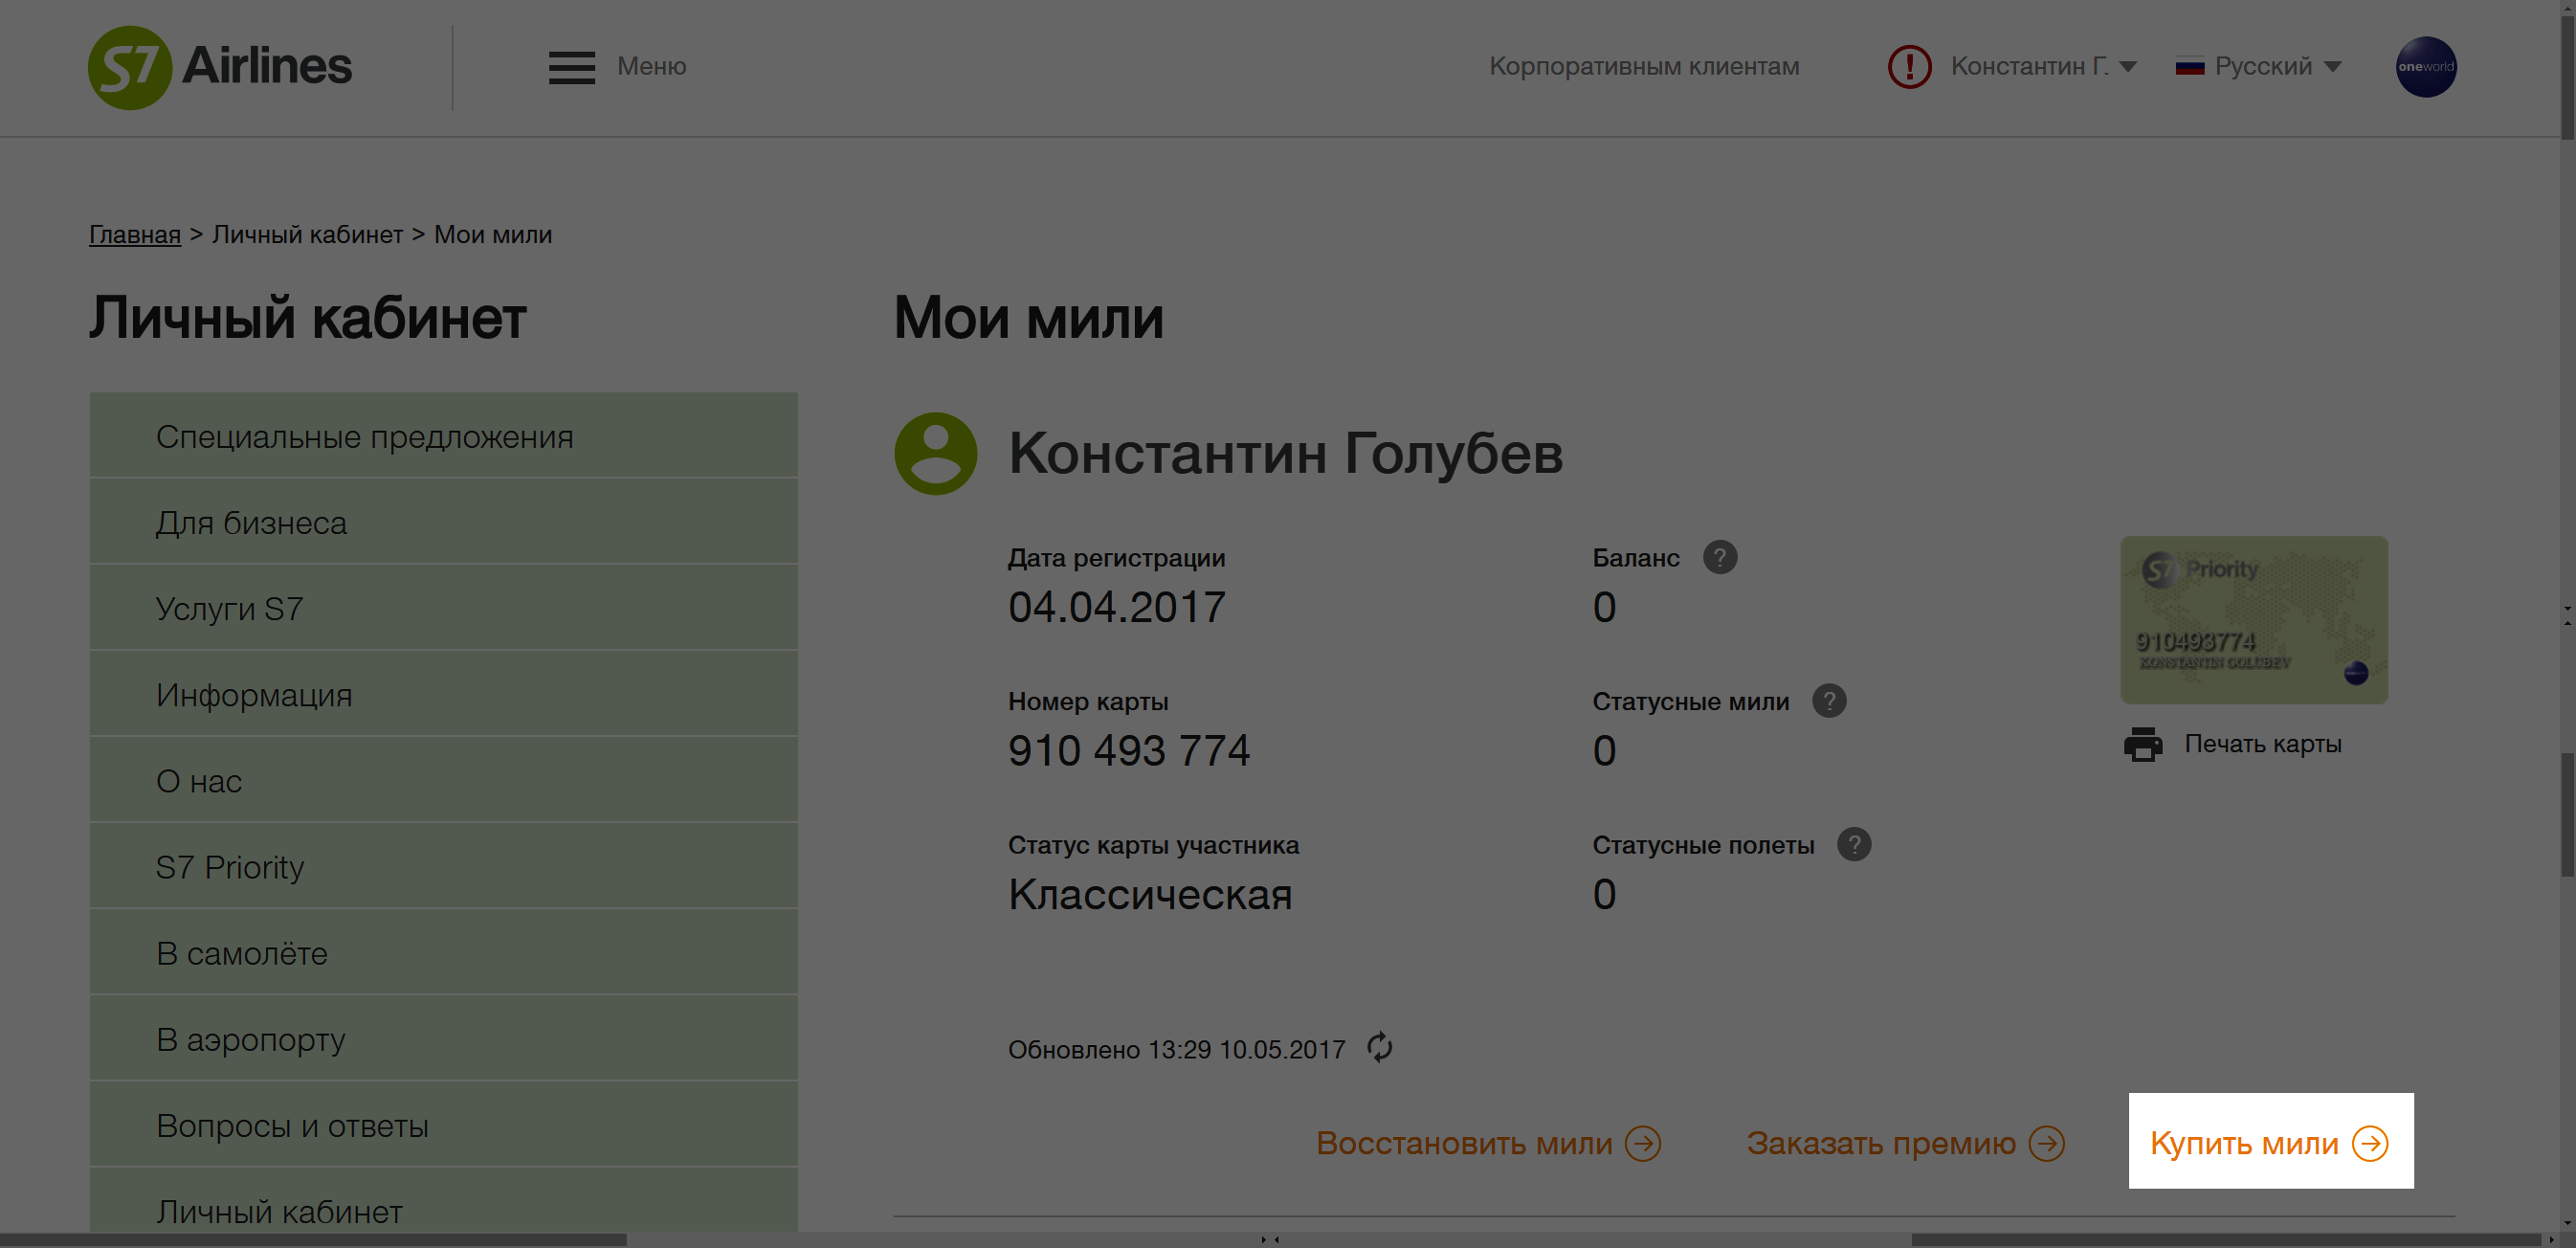 Купить мили можно в личном кабинете на s7.ru или мобильном приложении S7